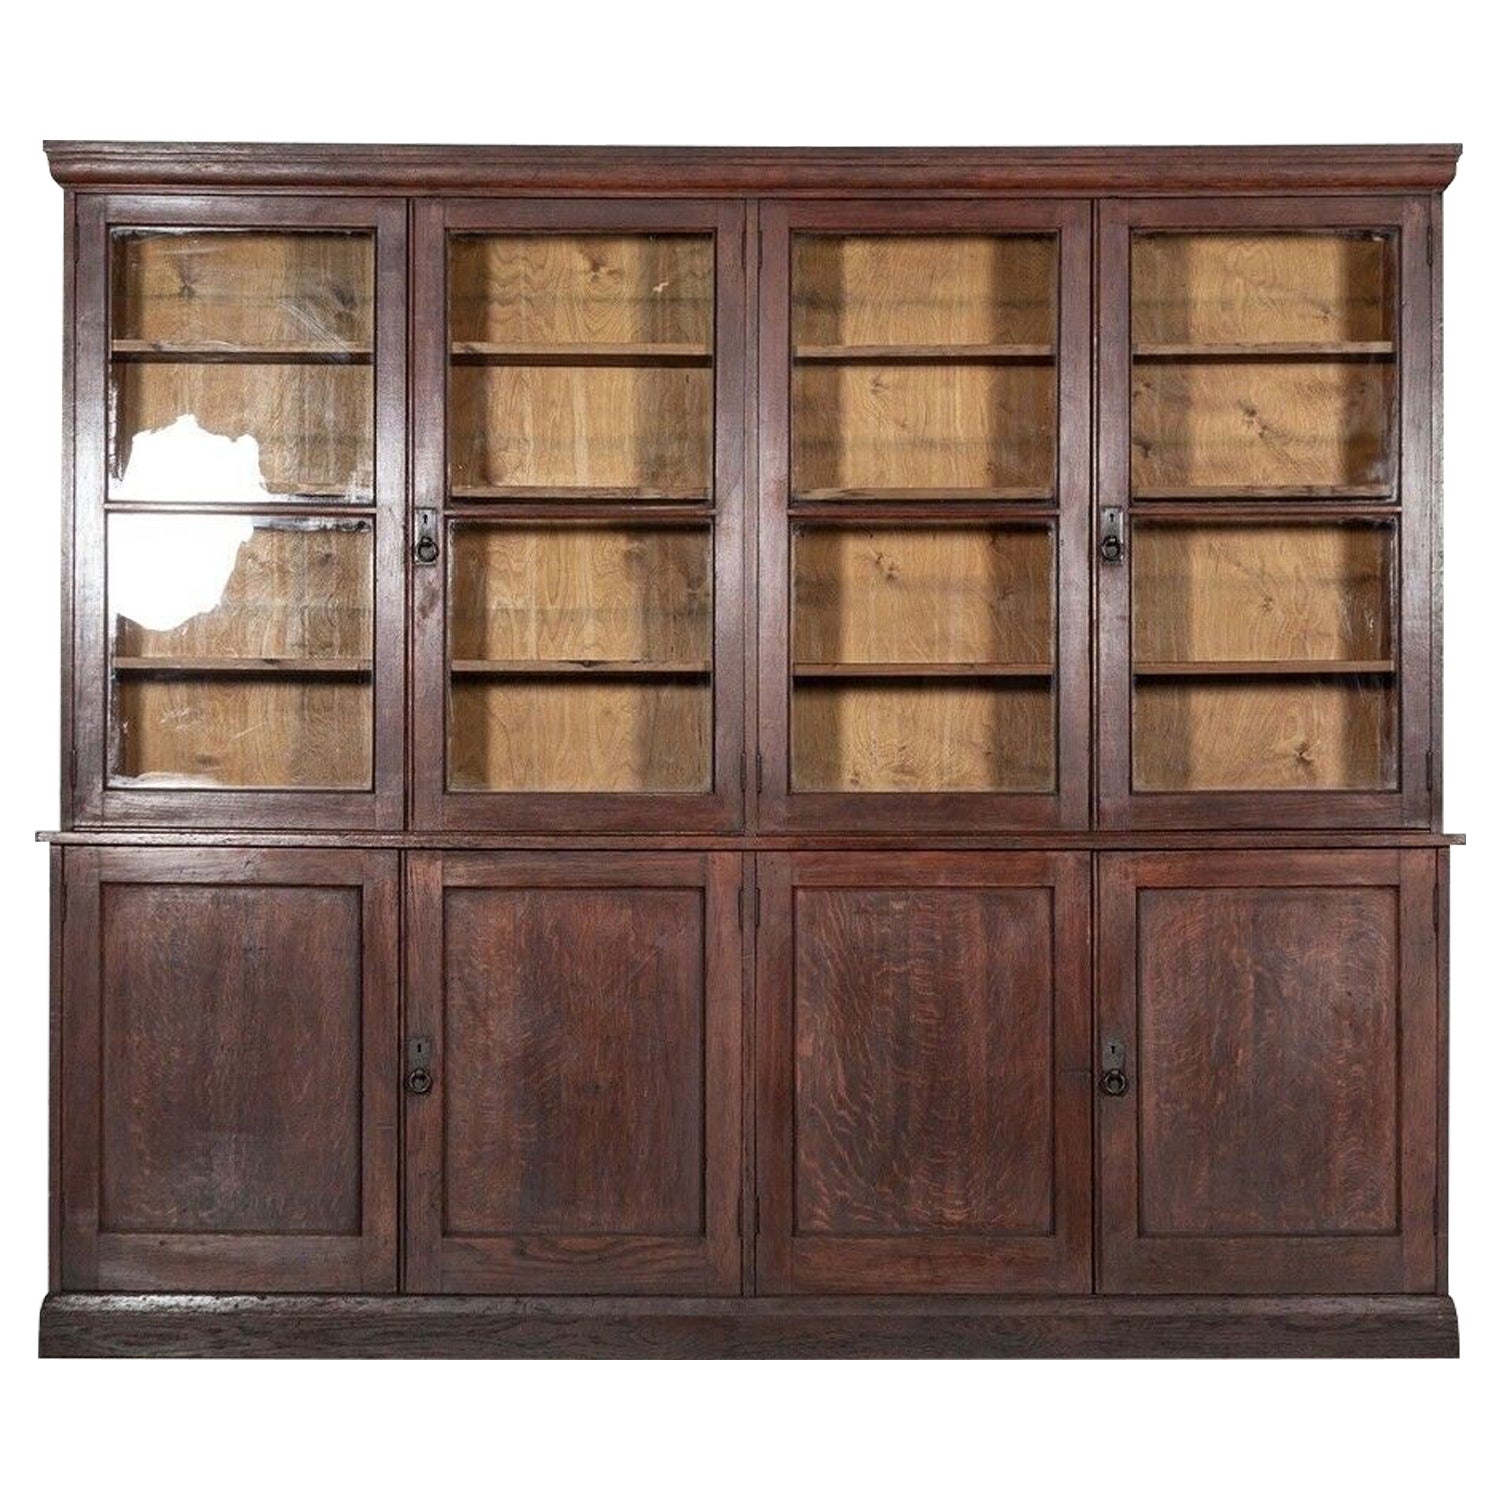 Monumental English Oak Glazed Bookcase